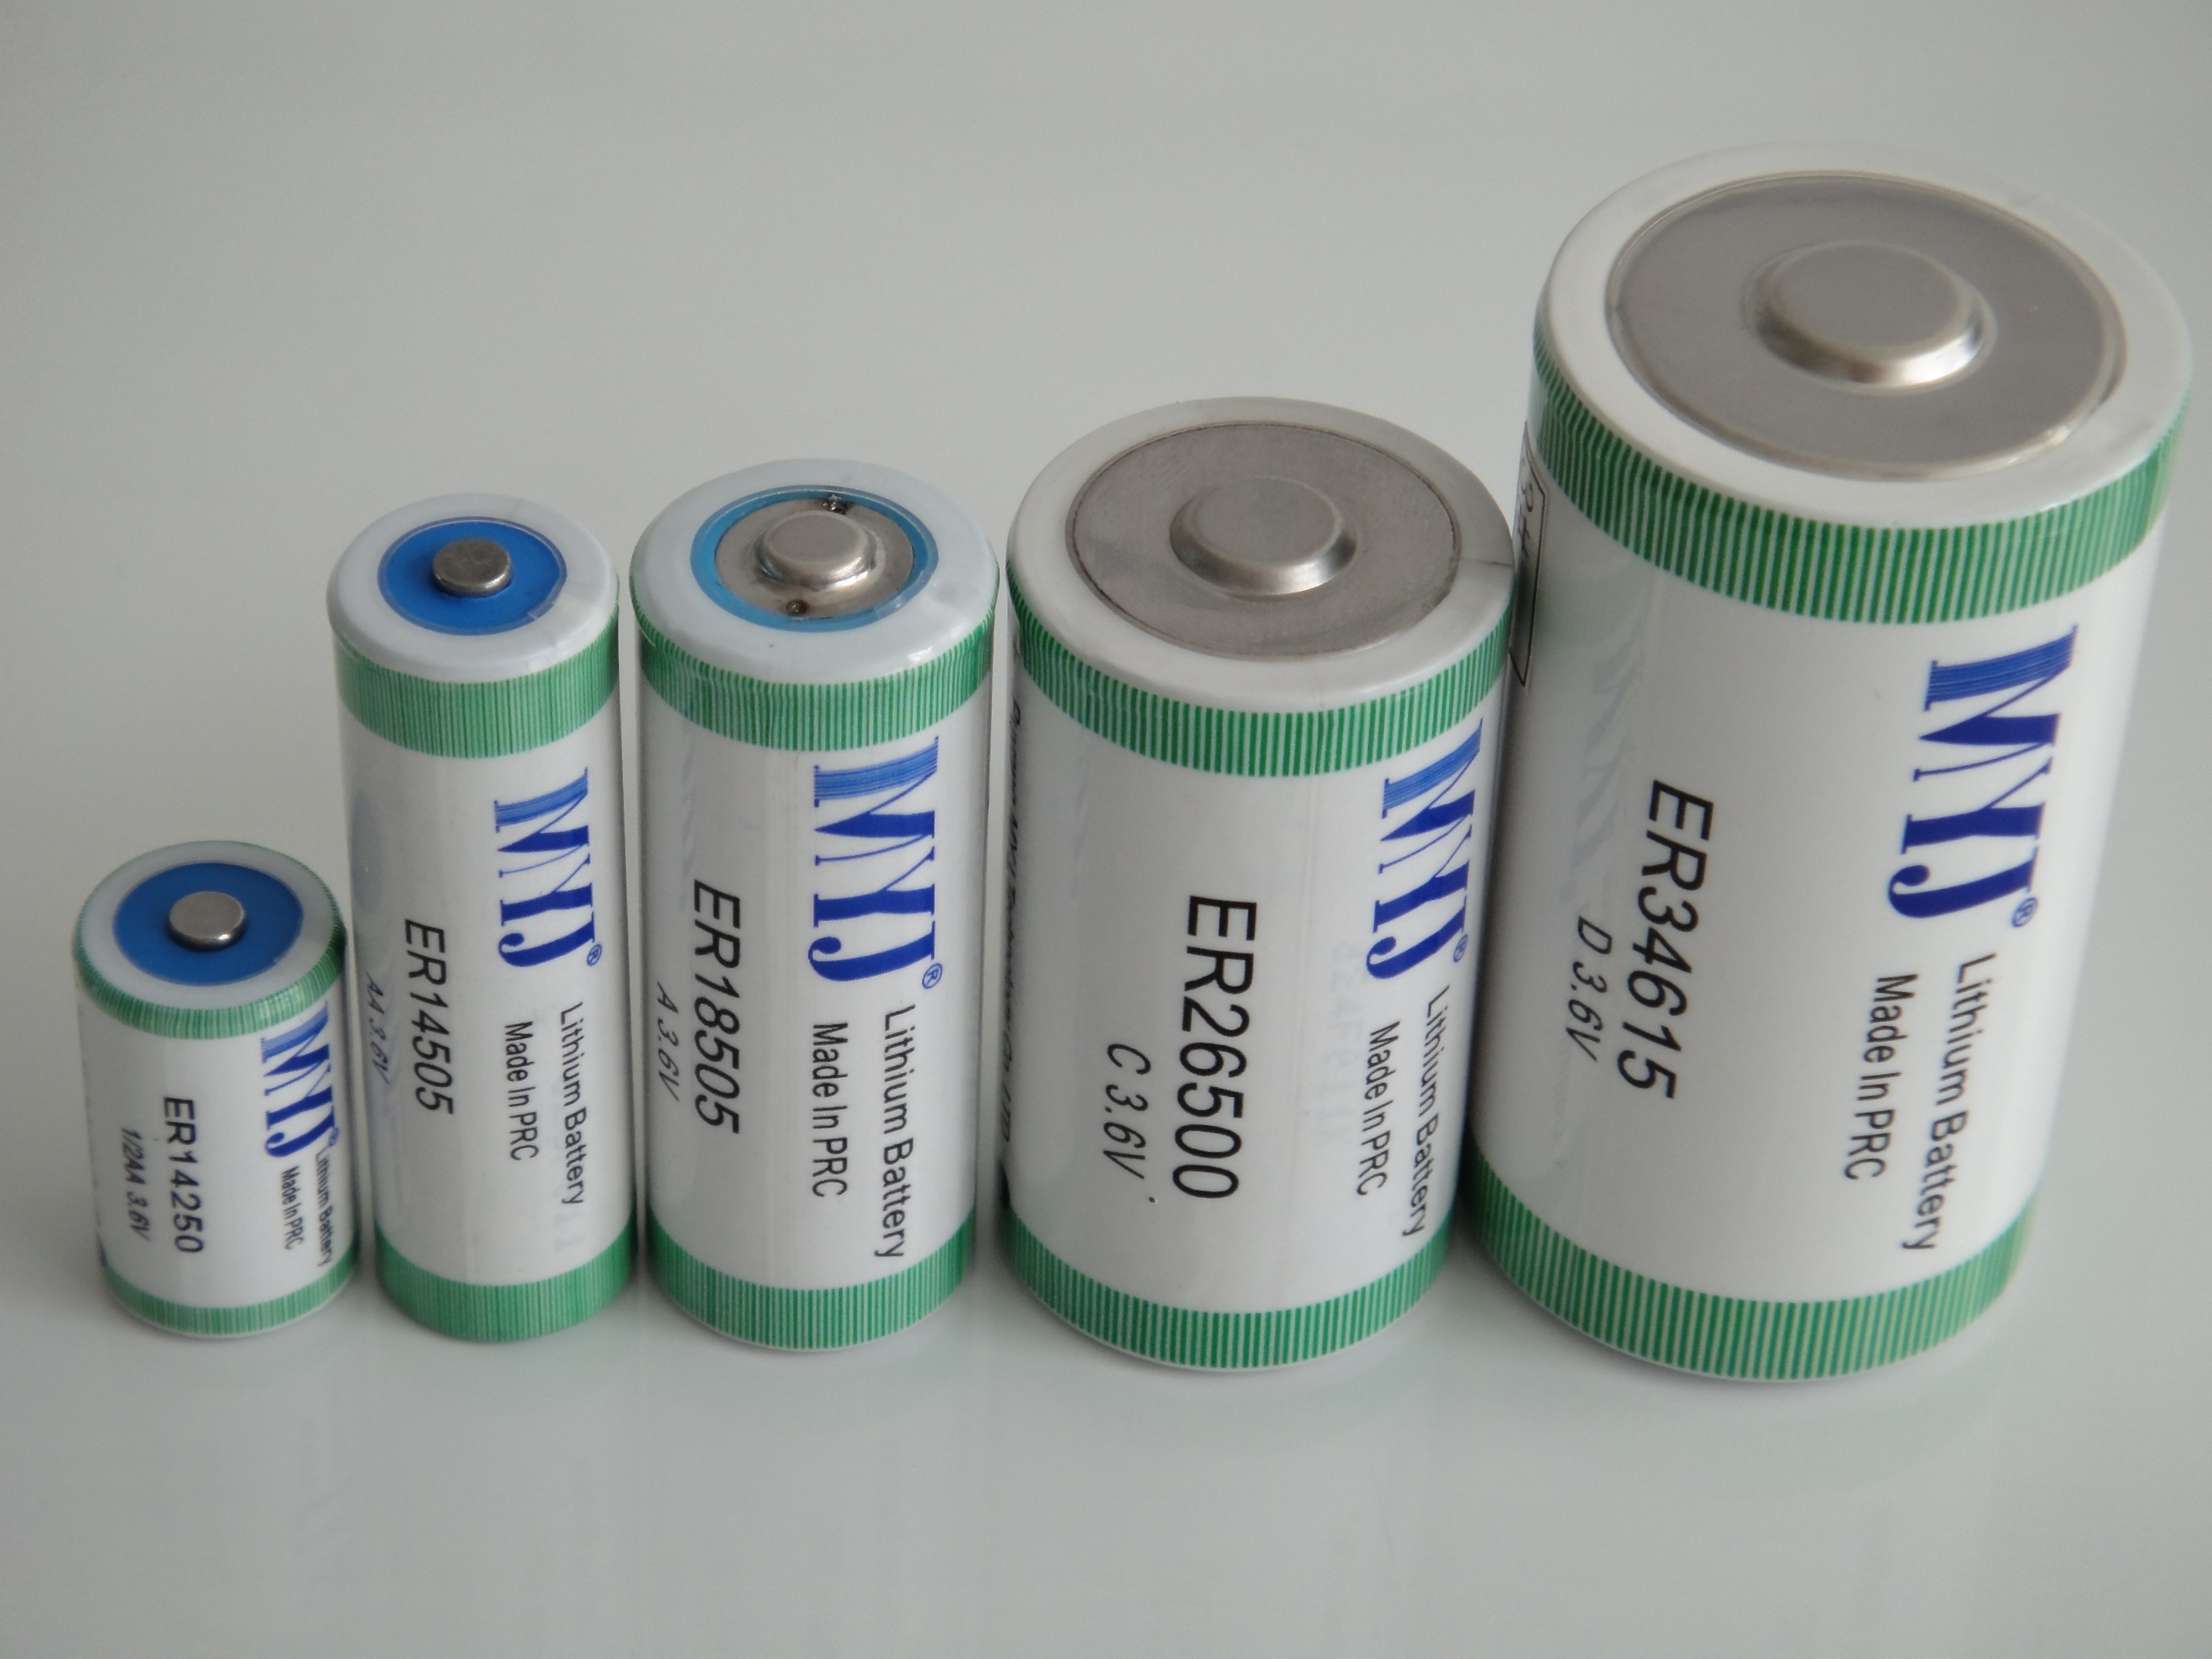 供应故障指示器专用ER14505高容量 3.6V一次性锂电池 ER14503.6V一次性锂电池 ER1450高容量锂电池图片